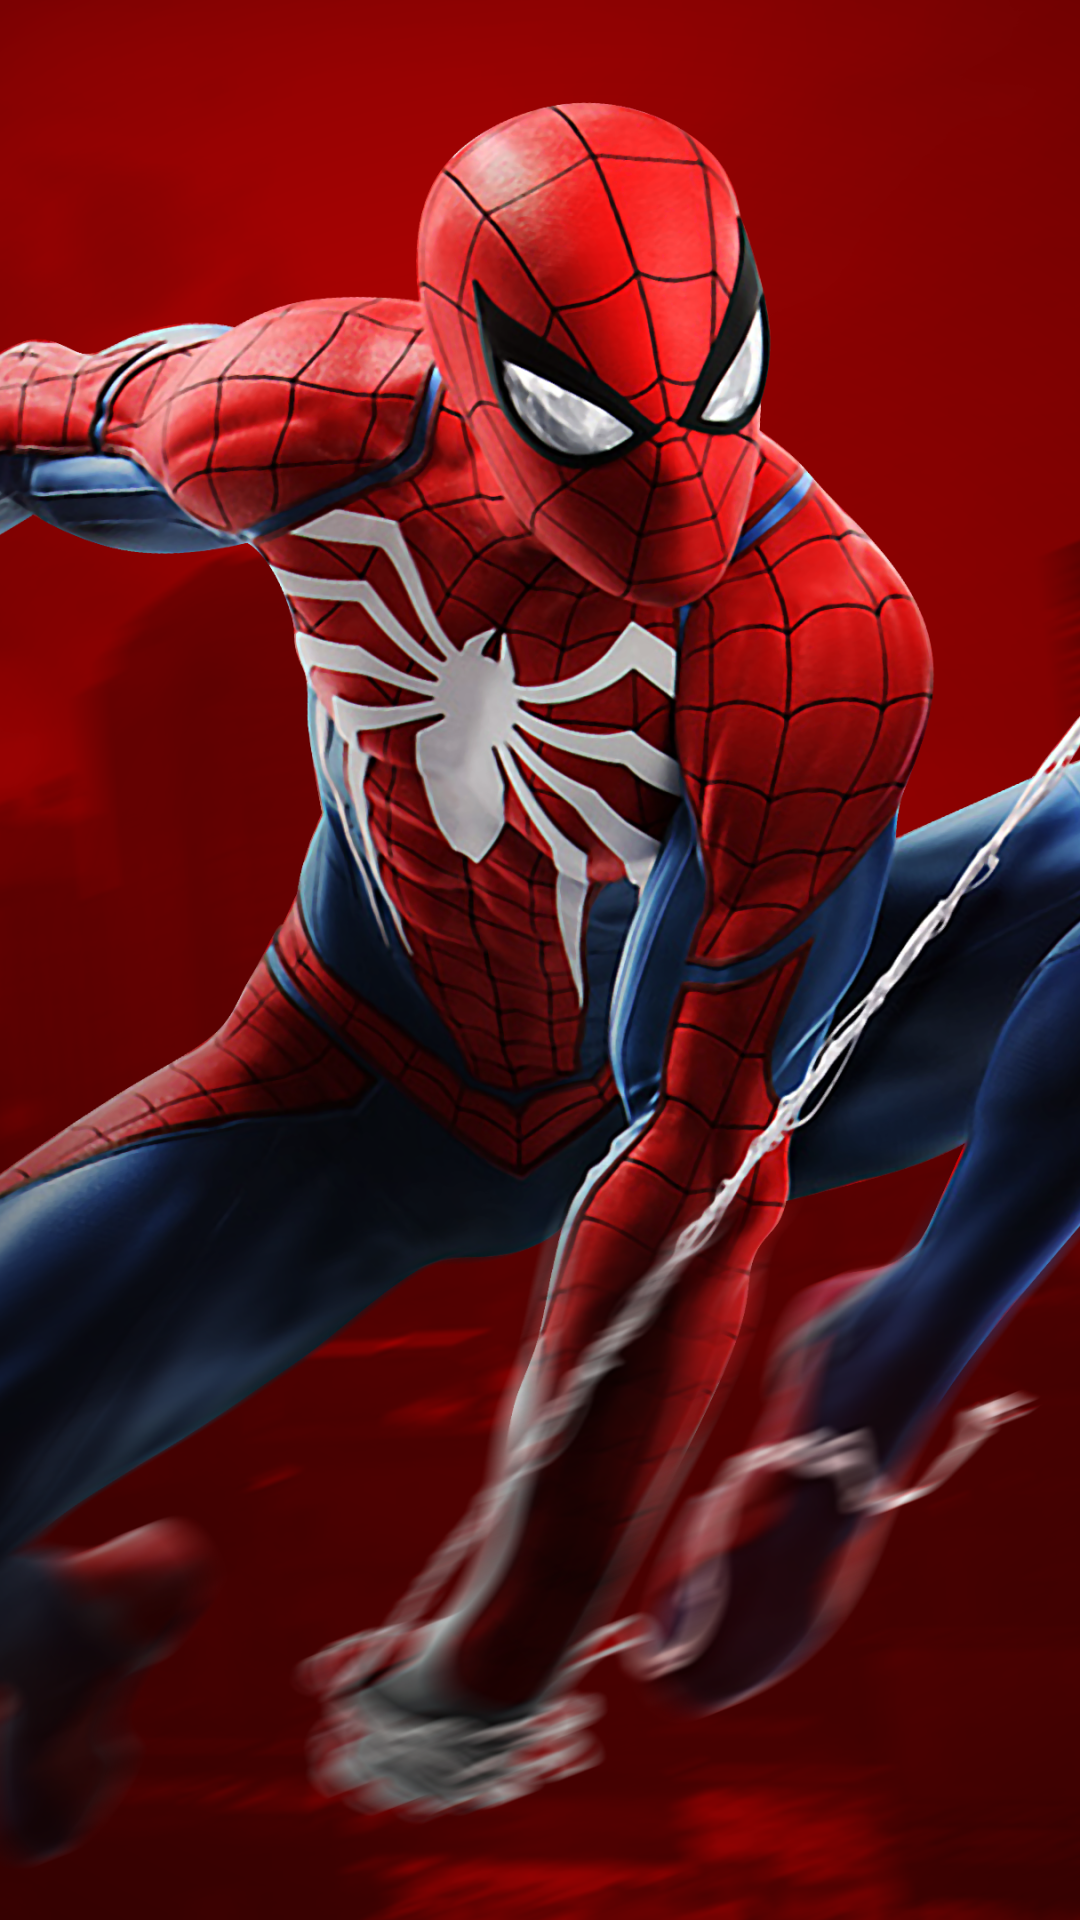 Spiderman Wallpaper 4k For Mobile - HD Wallpaper 